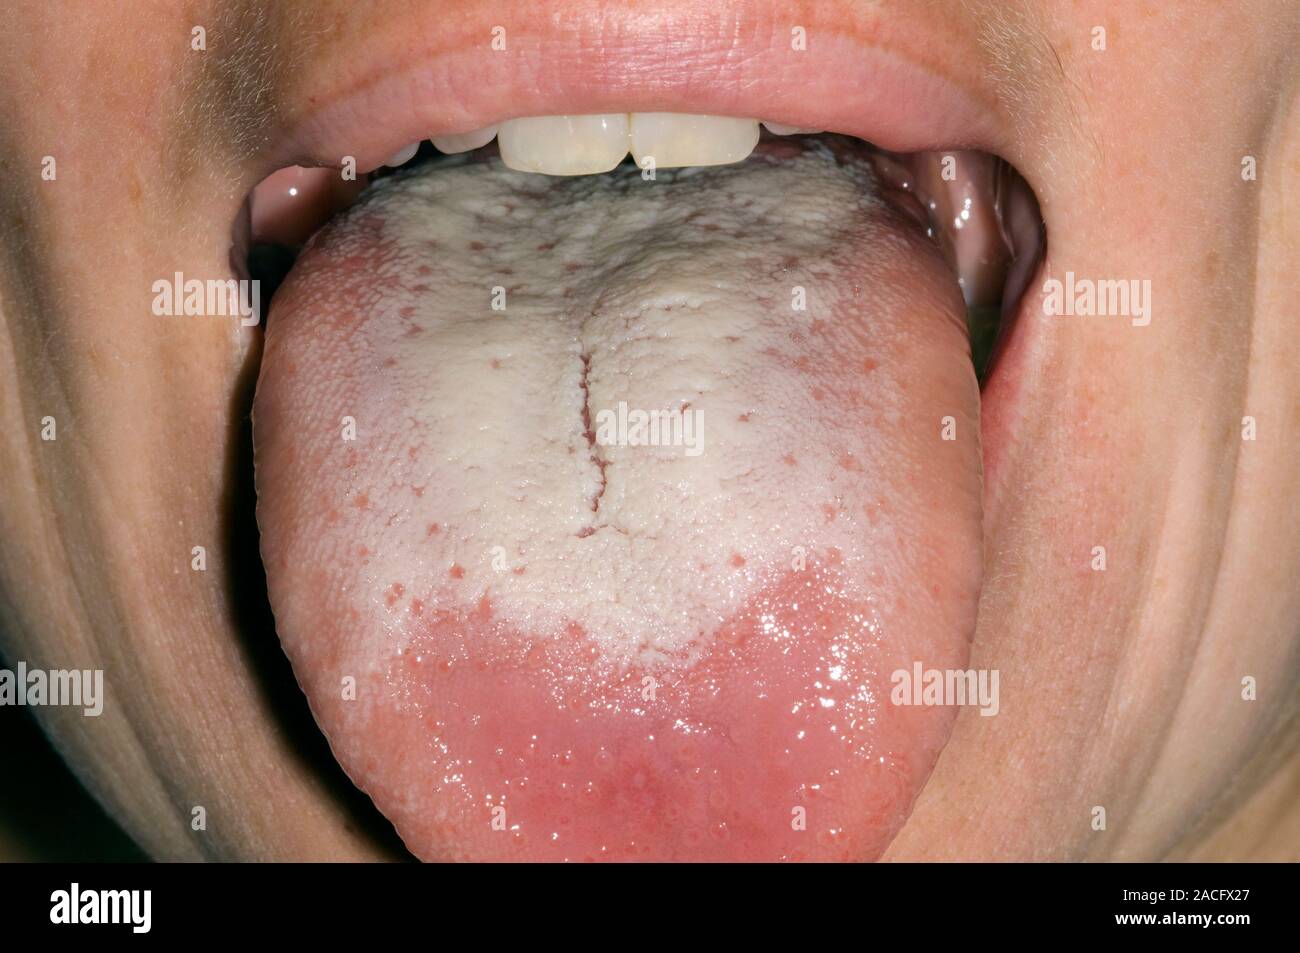 La candidiasis oral infección fúngica de la lengua (placas) de color blanco  y la boca en una paciente mujer adulta siguientes medicamentos antibióticos  tomados para cirugía de la vejiga Fotografía de stock -